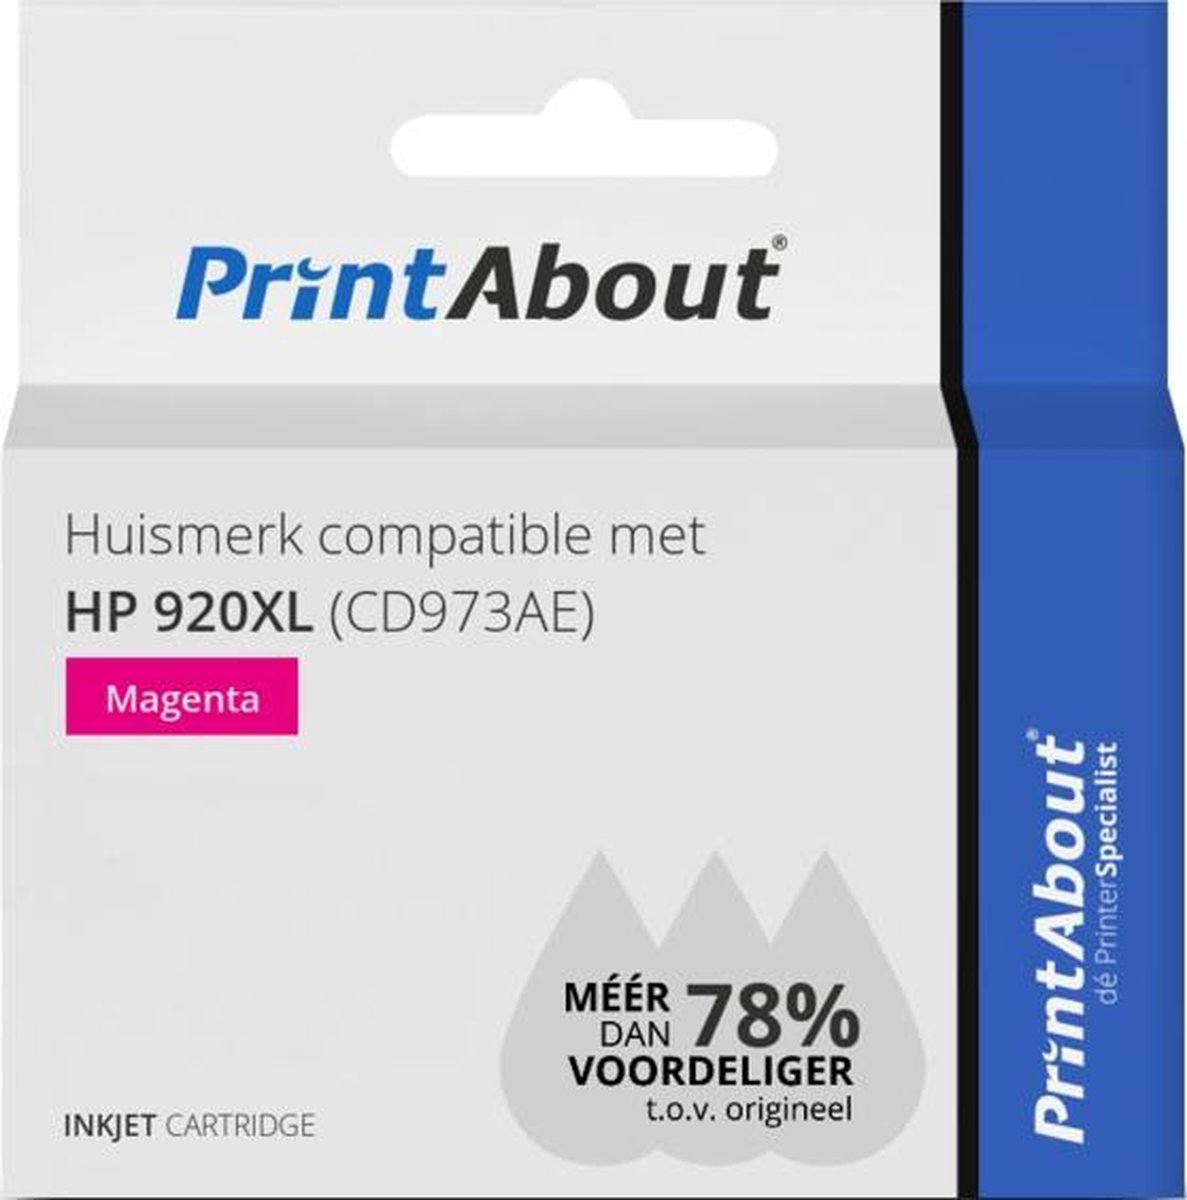 PrintAbout Huismerk compatible met HP 920XL (CD973AE) Inktcartridge Hoge capaciteit - Magenta